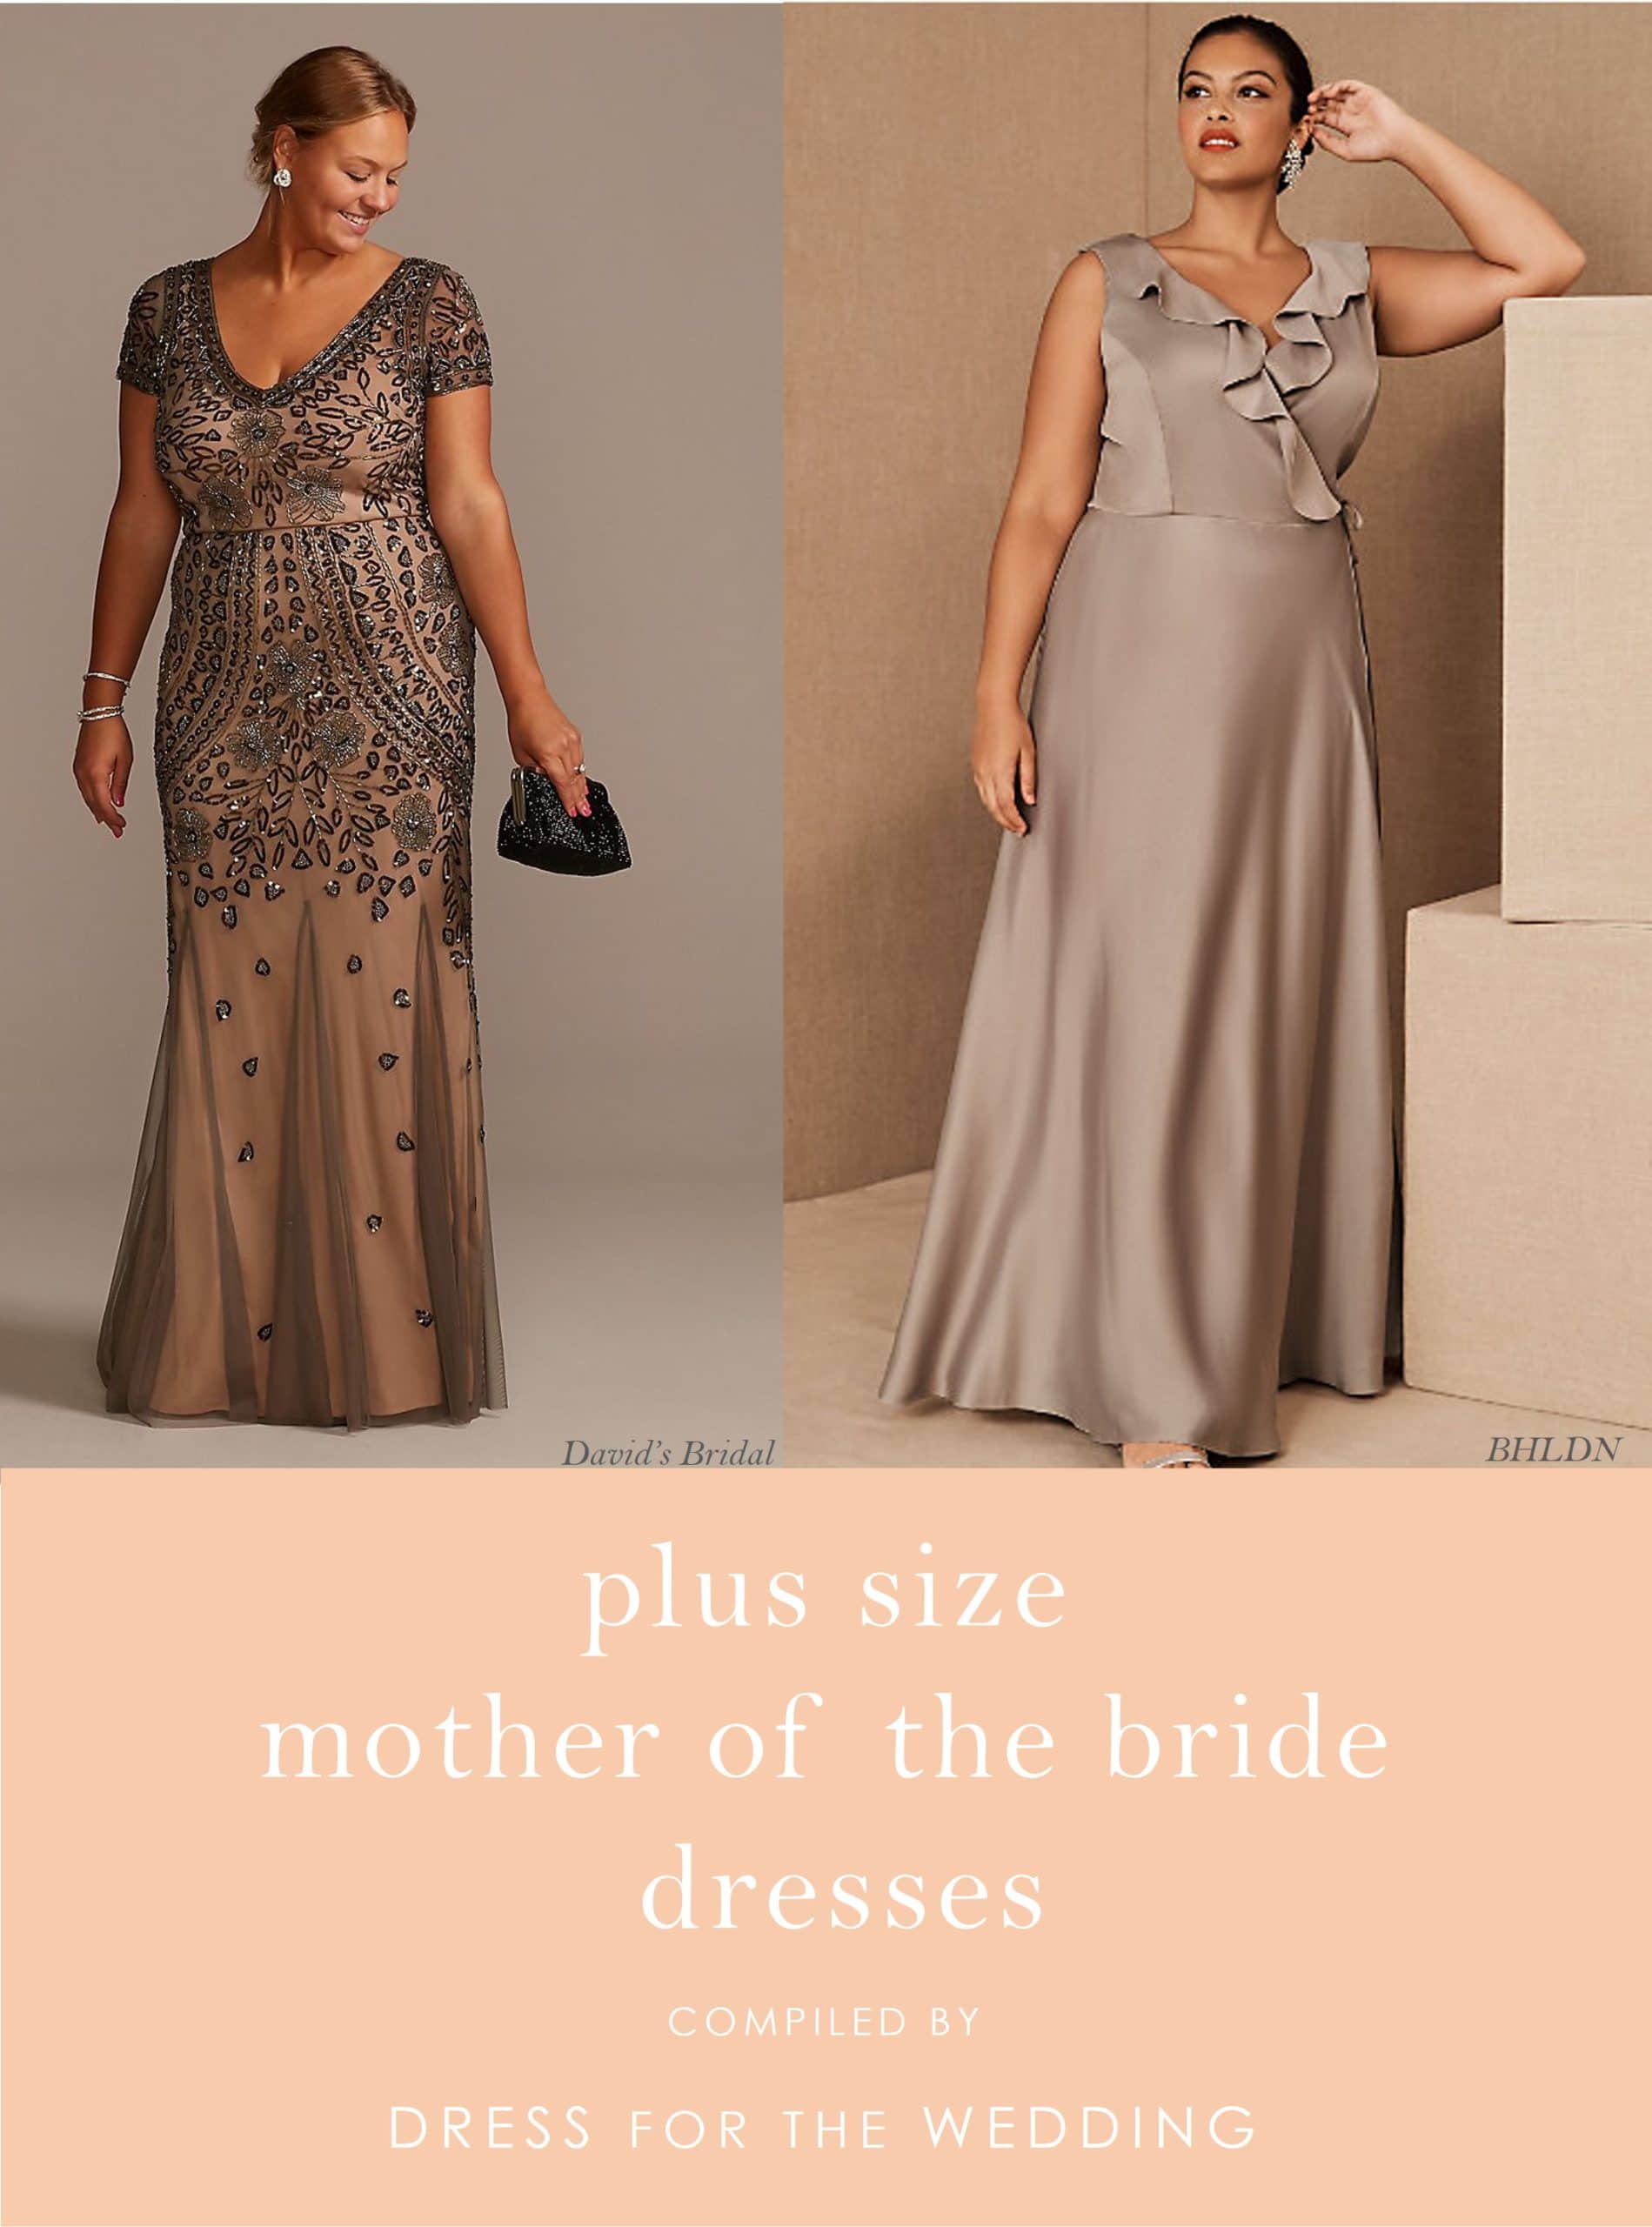 Udvikle Vittig karakter Plus Size Mother of the Bride Dresses - Dress for the Wedding